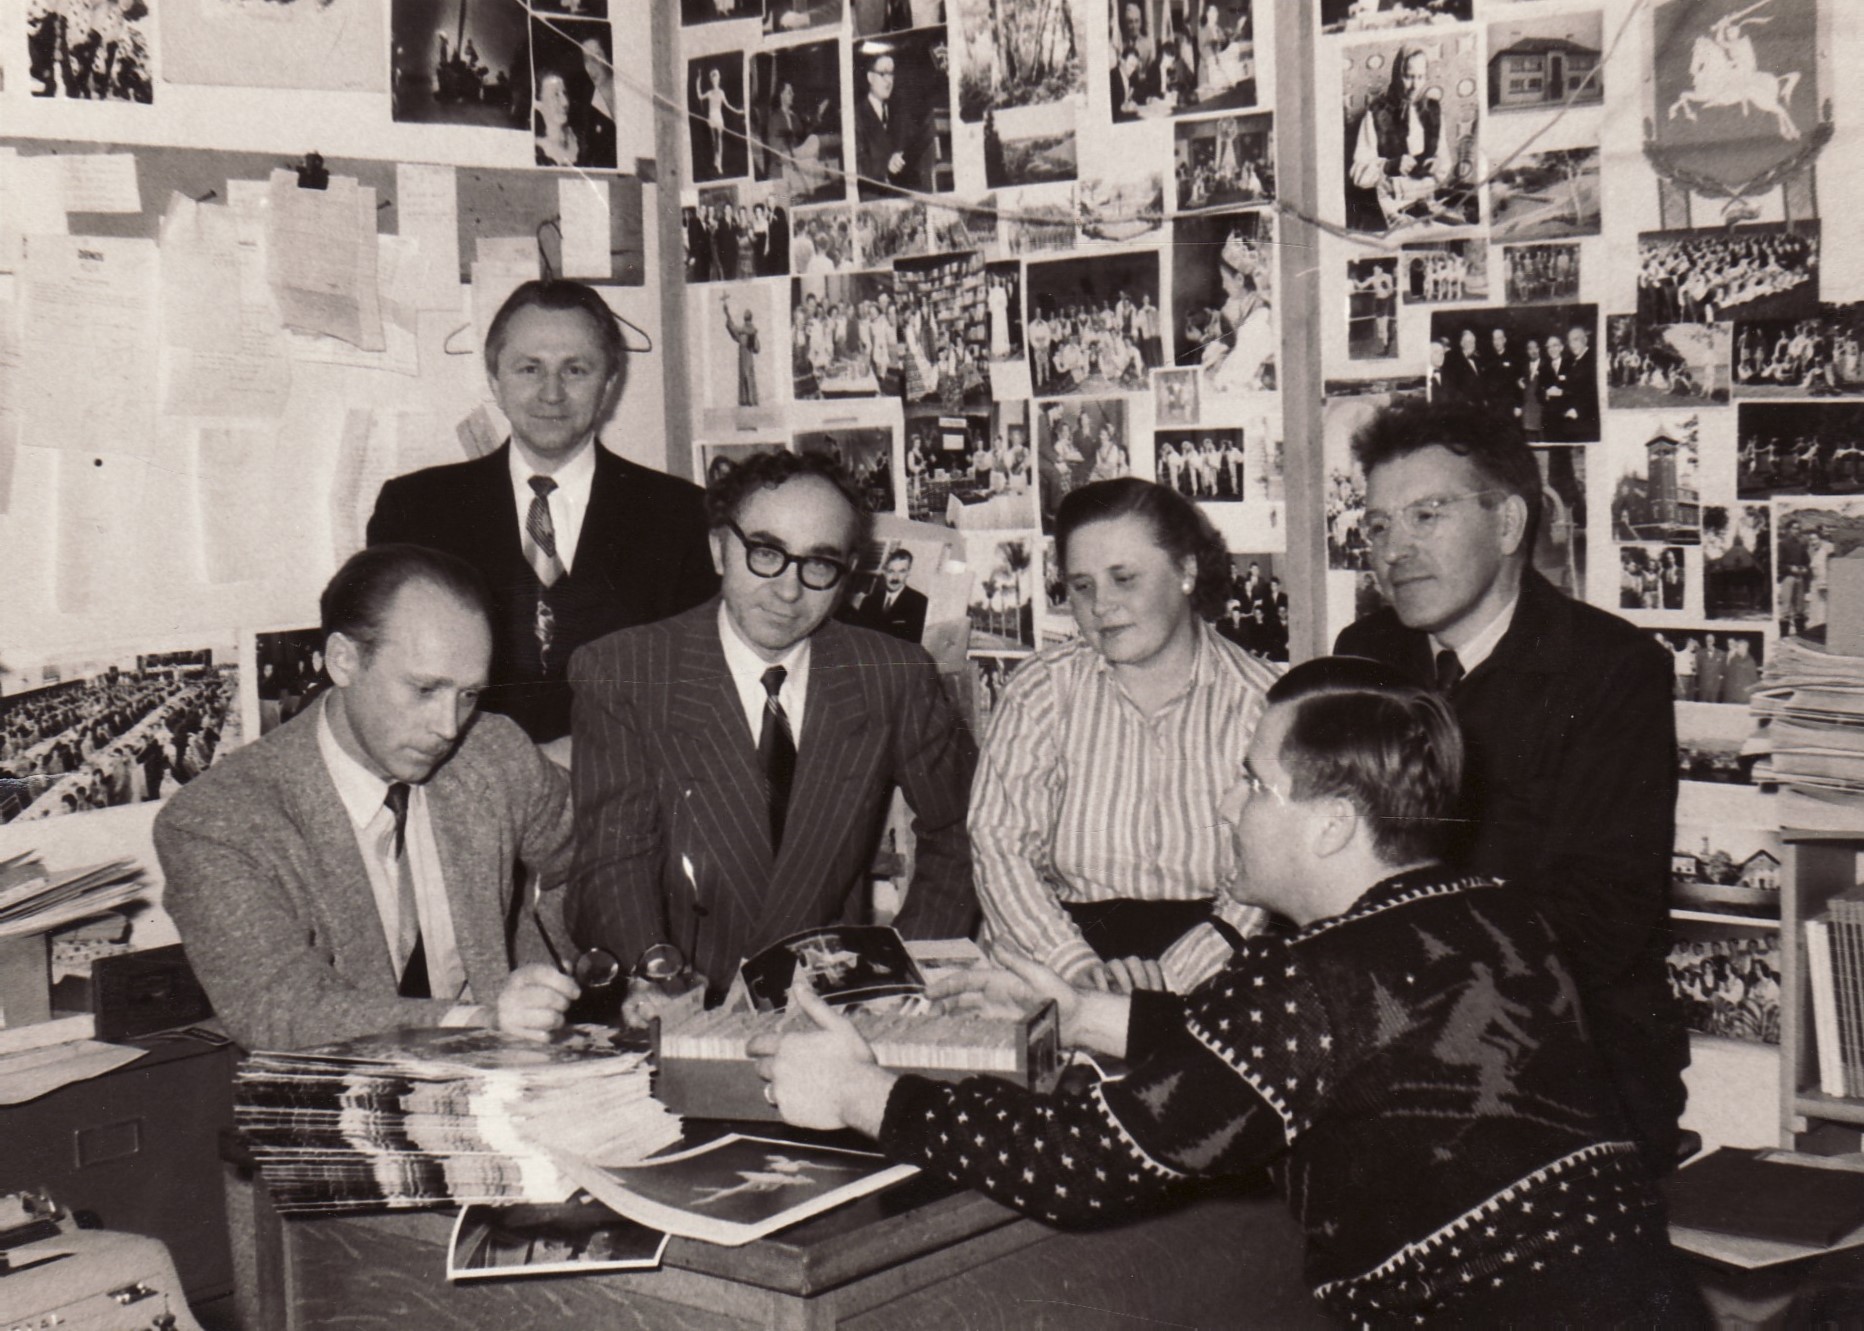 Žurnalo „Lietuvių dienos“ redakcinė kolegija 1956 m. sausio 20 d. Iš kairės J. Kojelis, A, Skirius, B. Brazdžionis, E. Tumienė, J. Tininis, M. Starkus. BBR10504